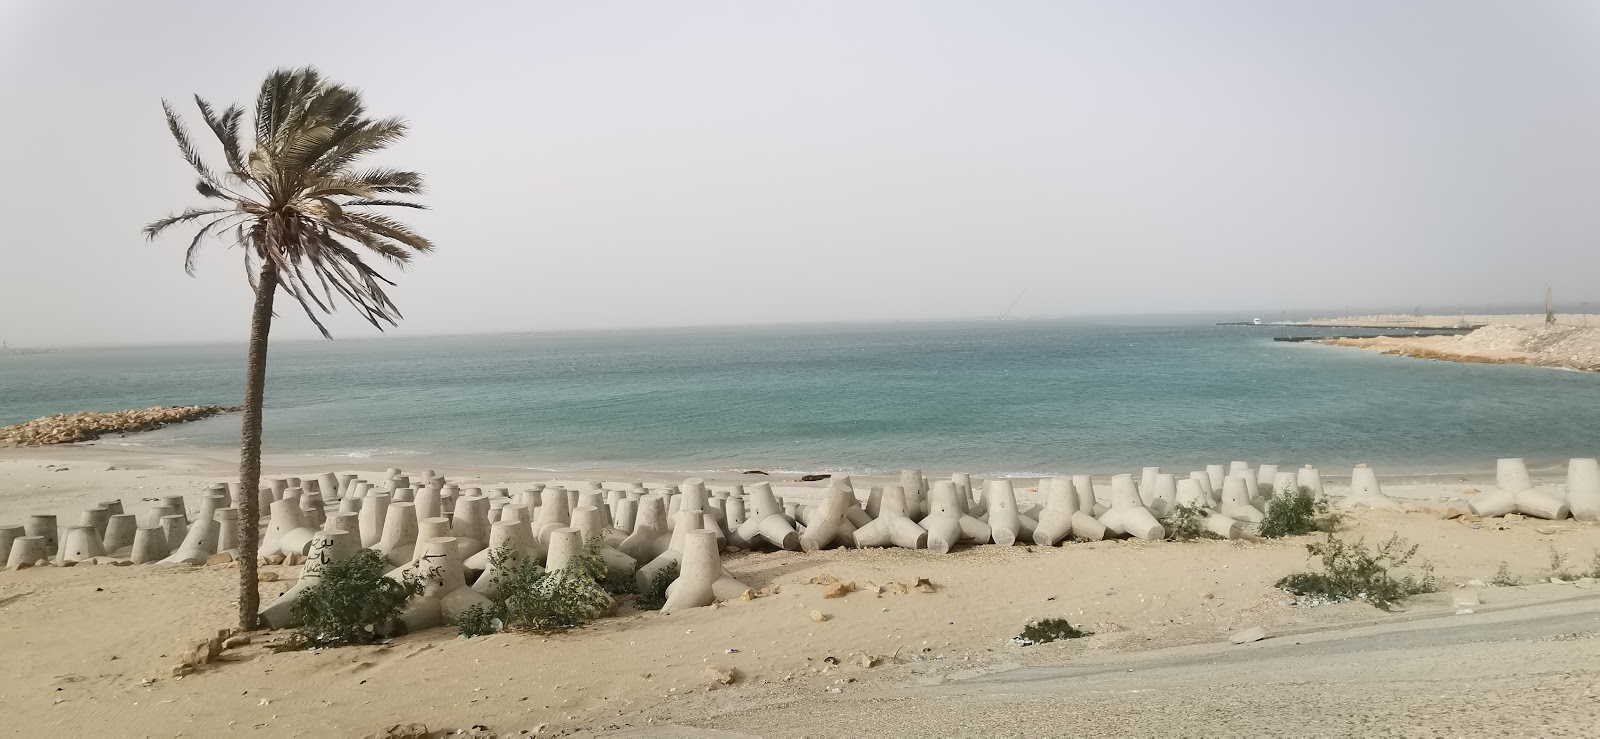 El Resa Beach'in fotoğrafı çok temiz temizlik seviyesi ile